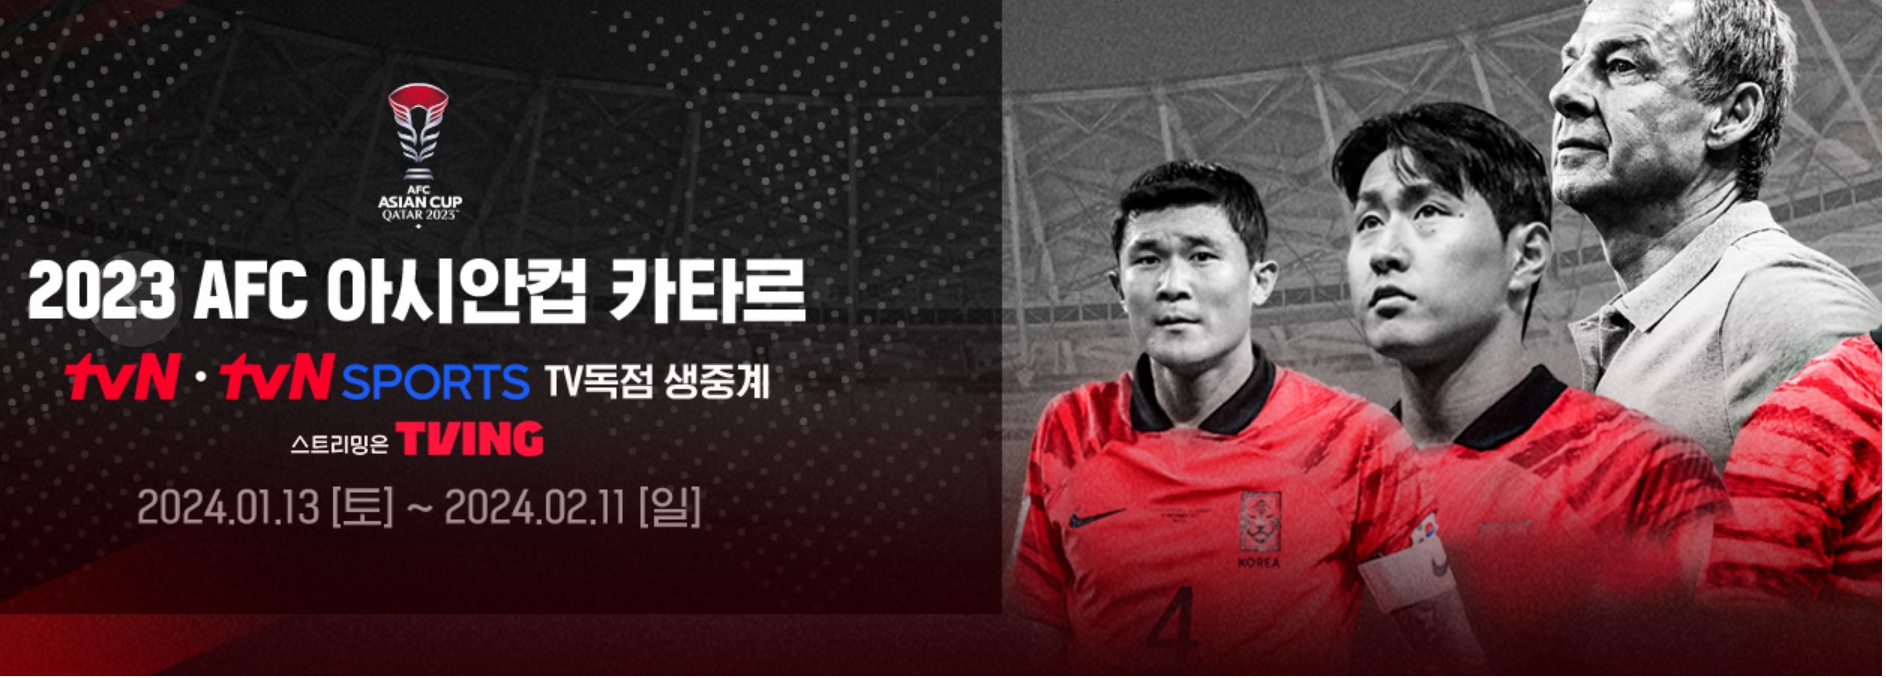 한국 vs 호주 아시안컵 8강 생중계 무료보기 마지막 경기